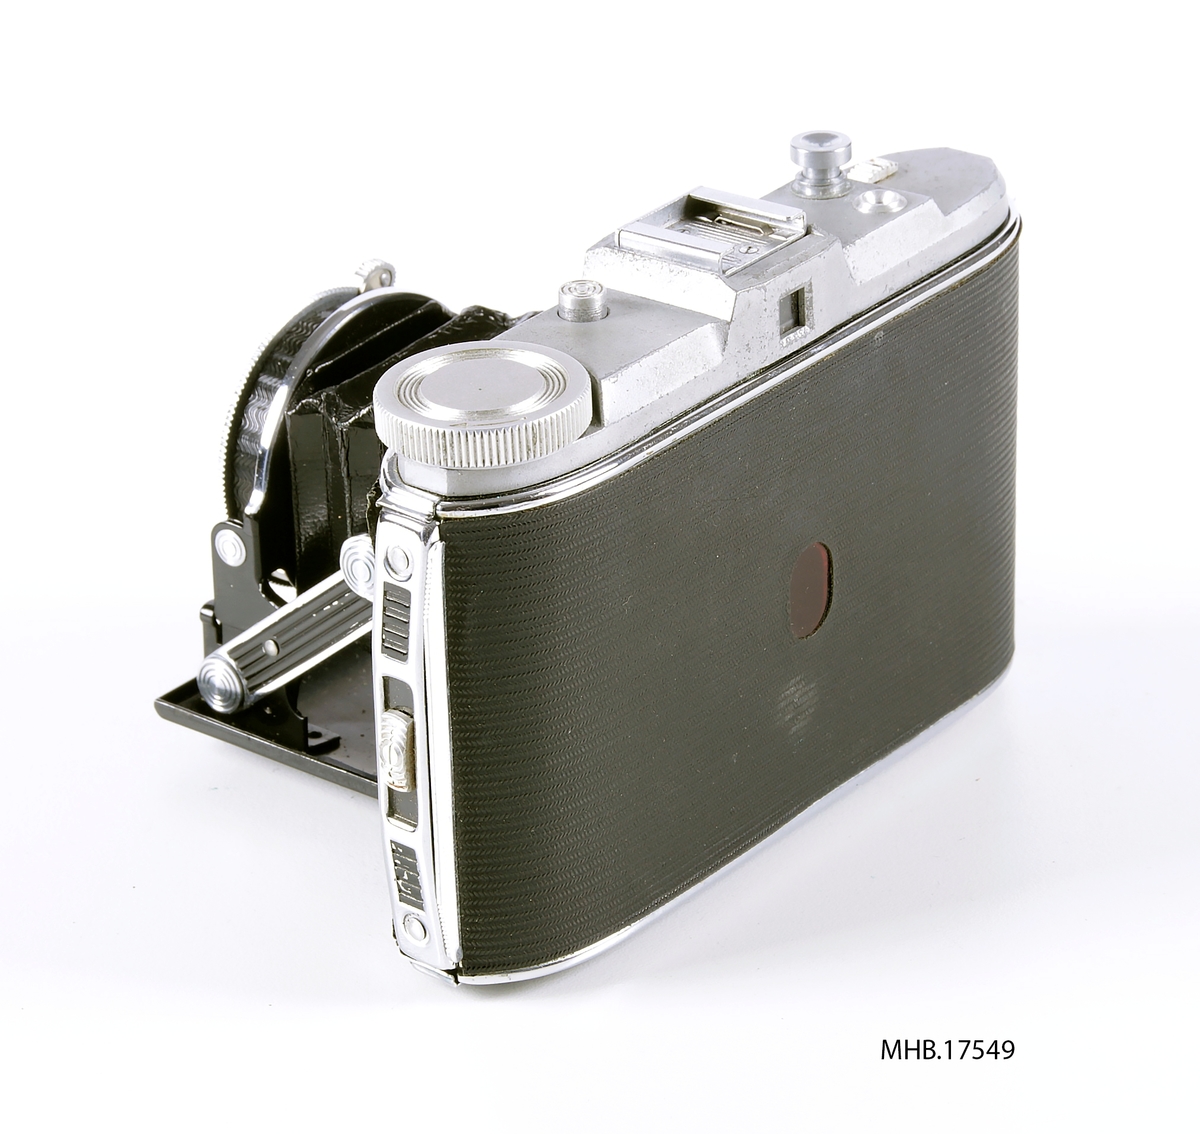 Folde fotoapparat Agfa Jsolette (120 mm filmrull) med etui. Agfa Apotar 8,5 cm f/4.5 linse, avstandsinnstilling på objektivet 1-10m +inf, Compur-Rapid lukker 1-1/500 sek og B. Produksjonssted Tyskland.